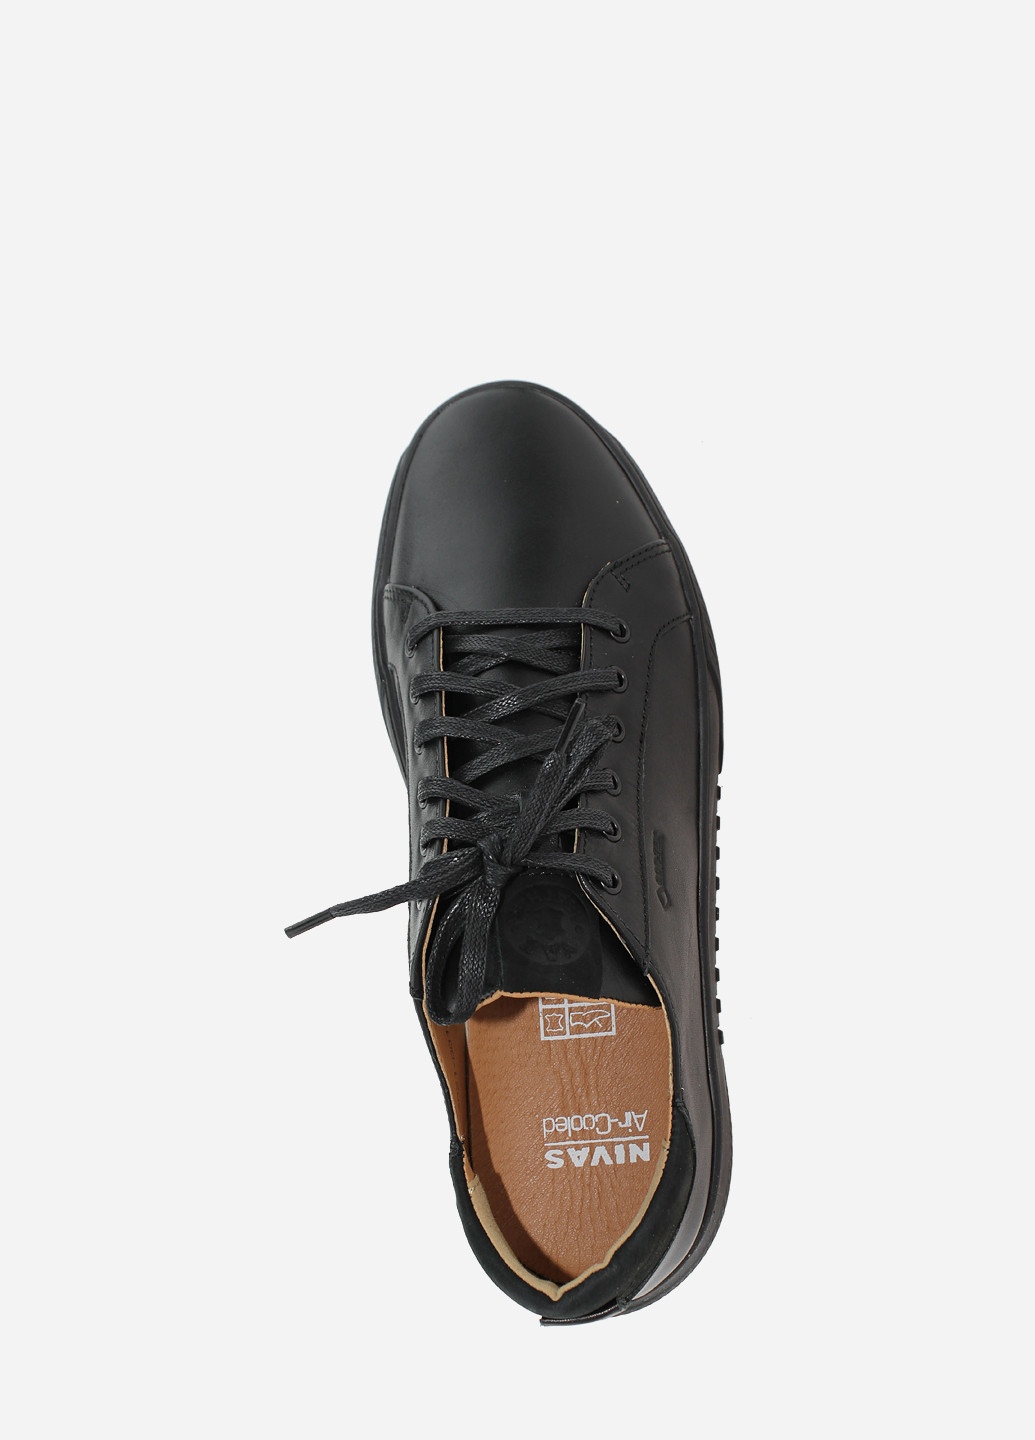 Чорні Осінні кросівки 22-001 чорний Nivas